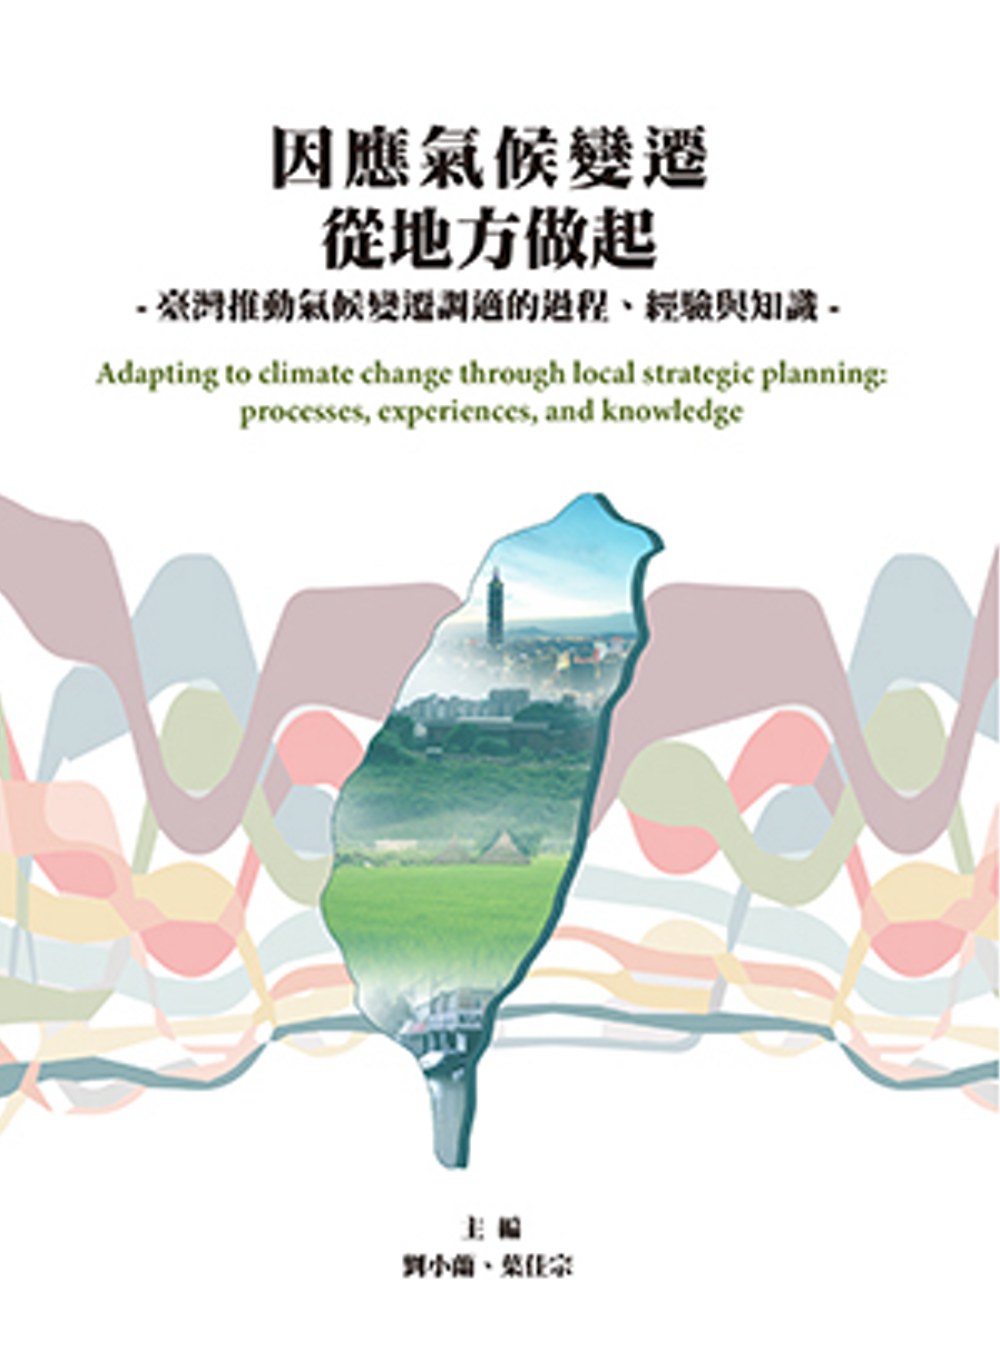 因應氣候變遷從地方做起：臺灣推動氣候變遷調適的過程、經驗與知識